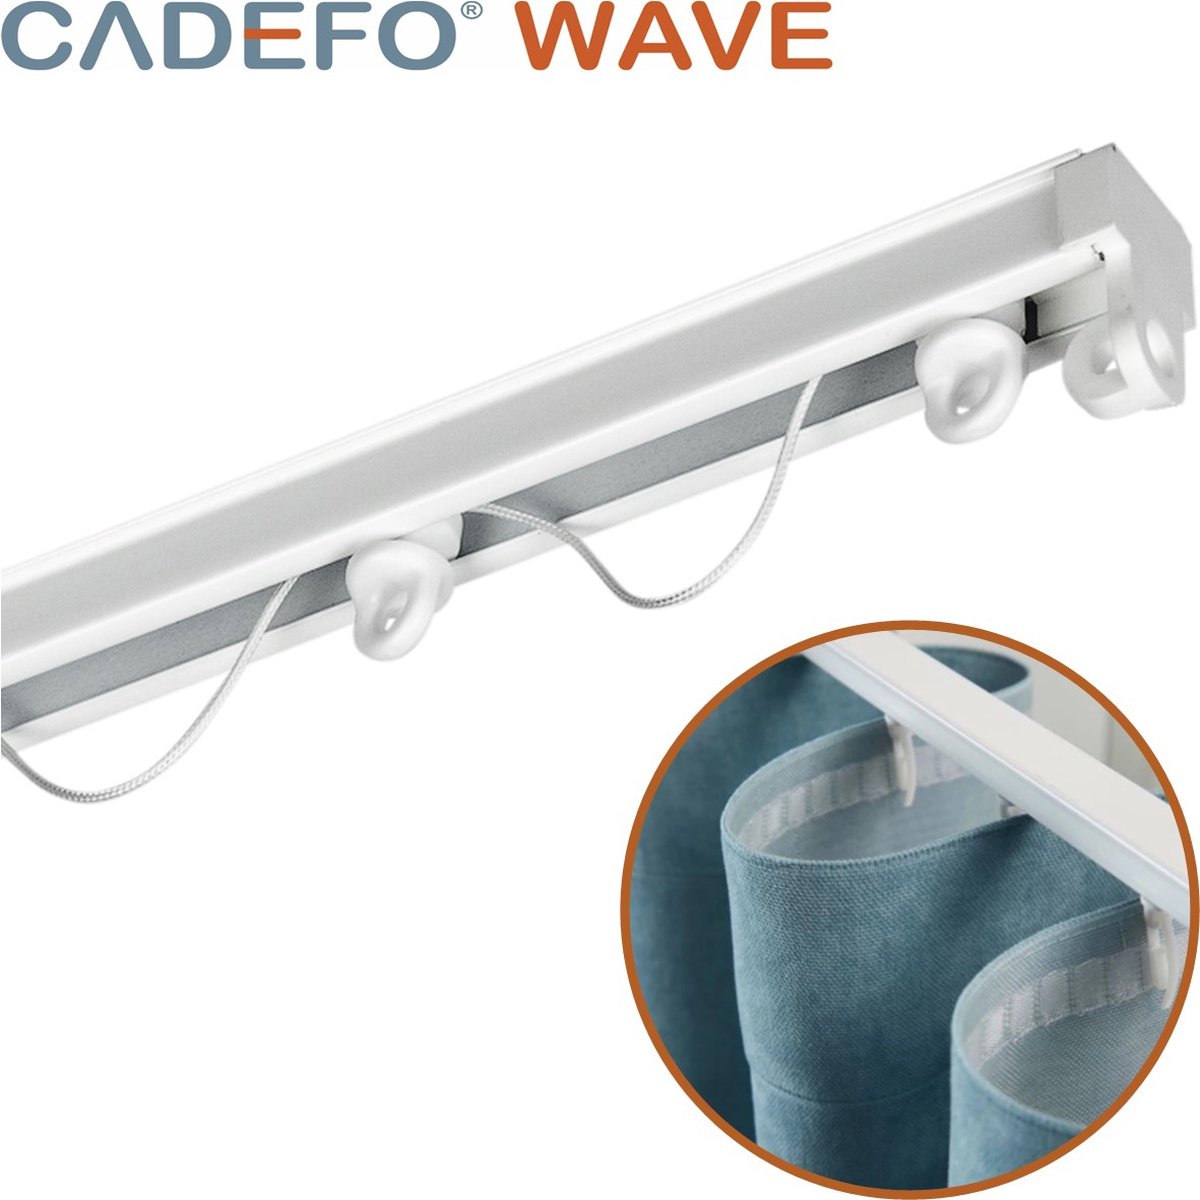 CADEFO WAVE (551 - 600 cm) Gordijnrails - Compleet op maat! - UIT 1 STUK - Leverbaar tot 6 meter - Plafondbevestiging - Lengte 570 cm